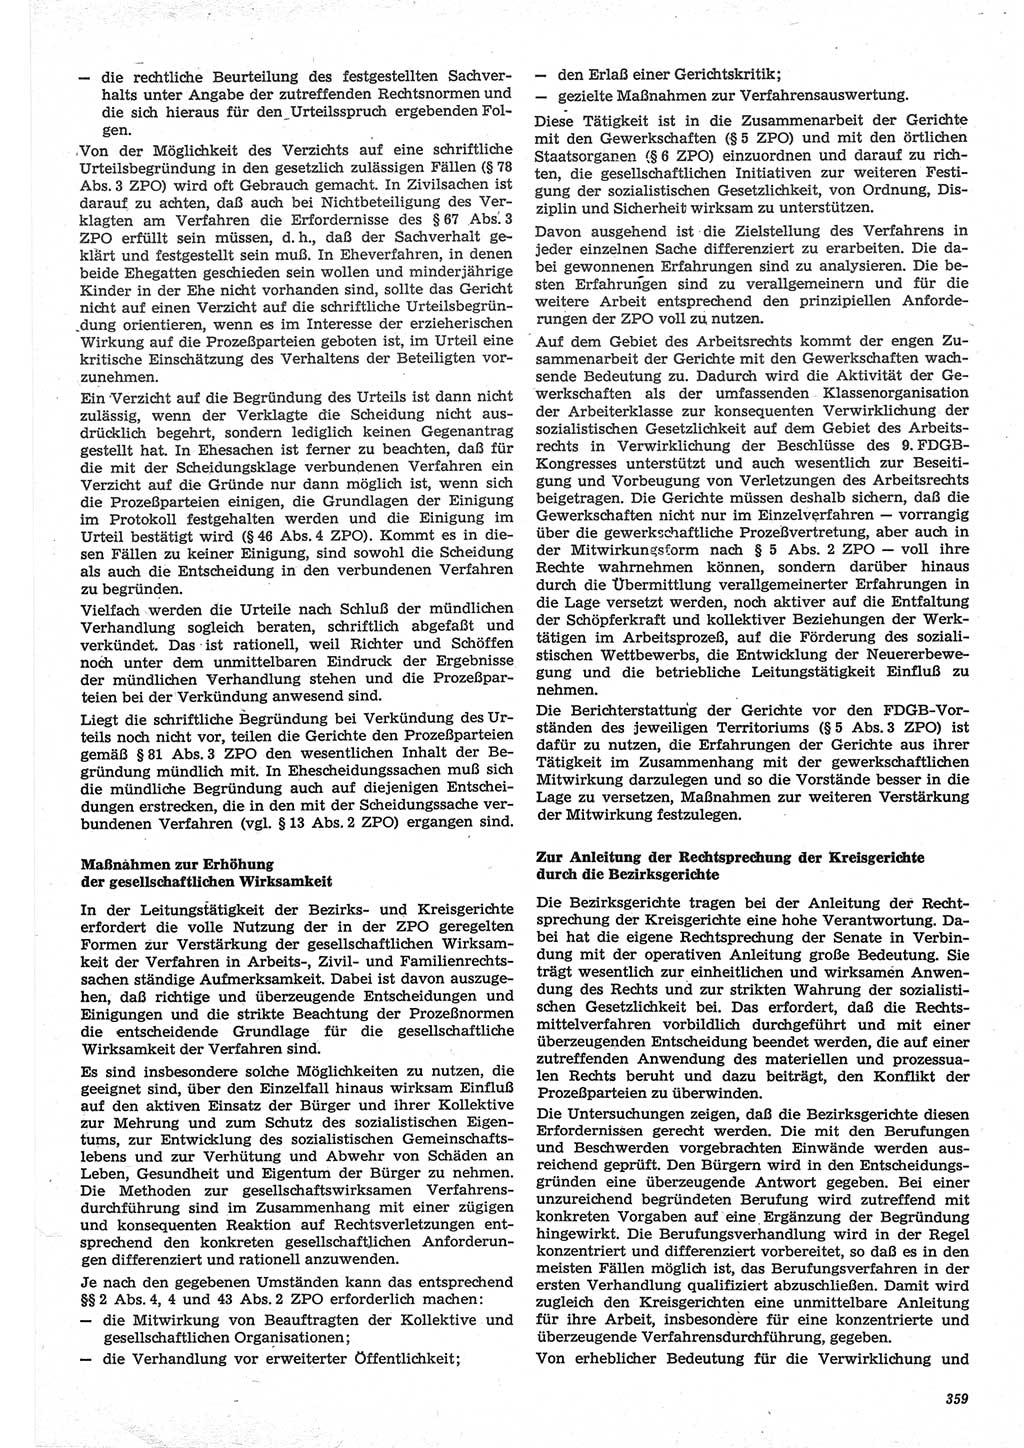 Neue Justiz (NJ), Zeitschrift für Recht und Rechtswissenschaft-Zeitschrift, sozialistisches Recht und Gesetzlichkeit, 31. Jahrgang 1977, Seite 359 (NJ DDR 1977, S. 359)